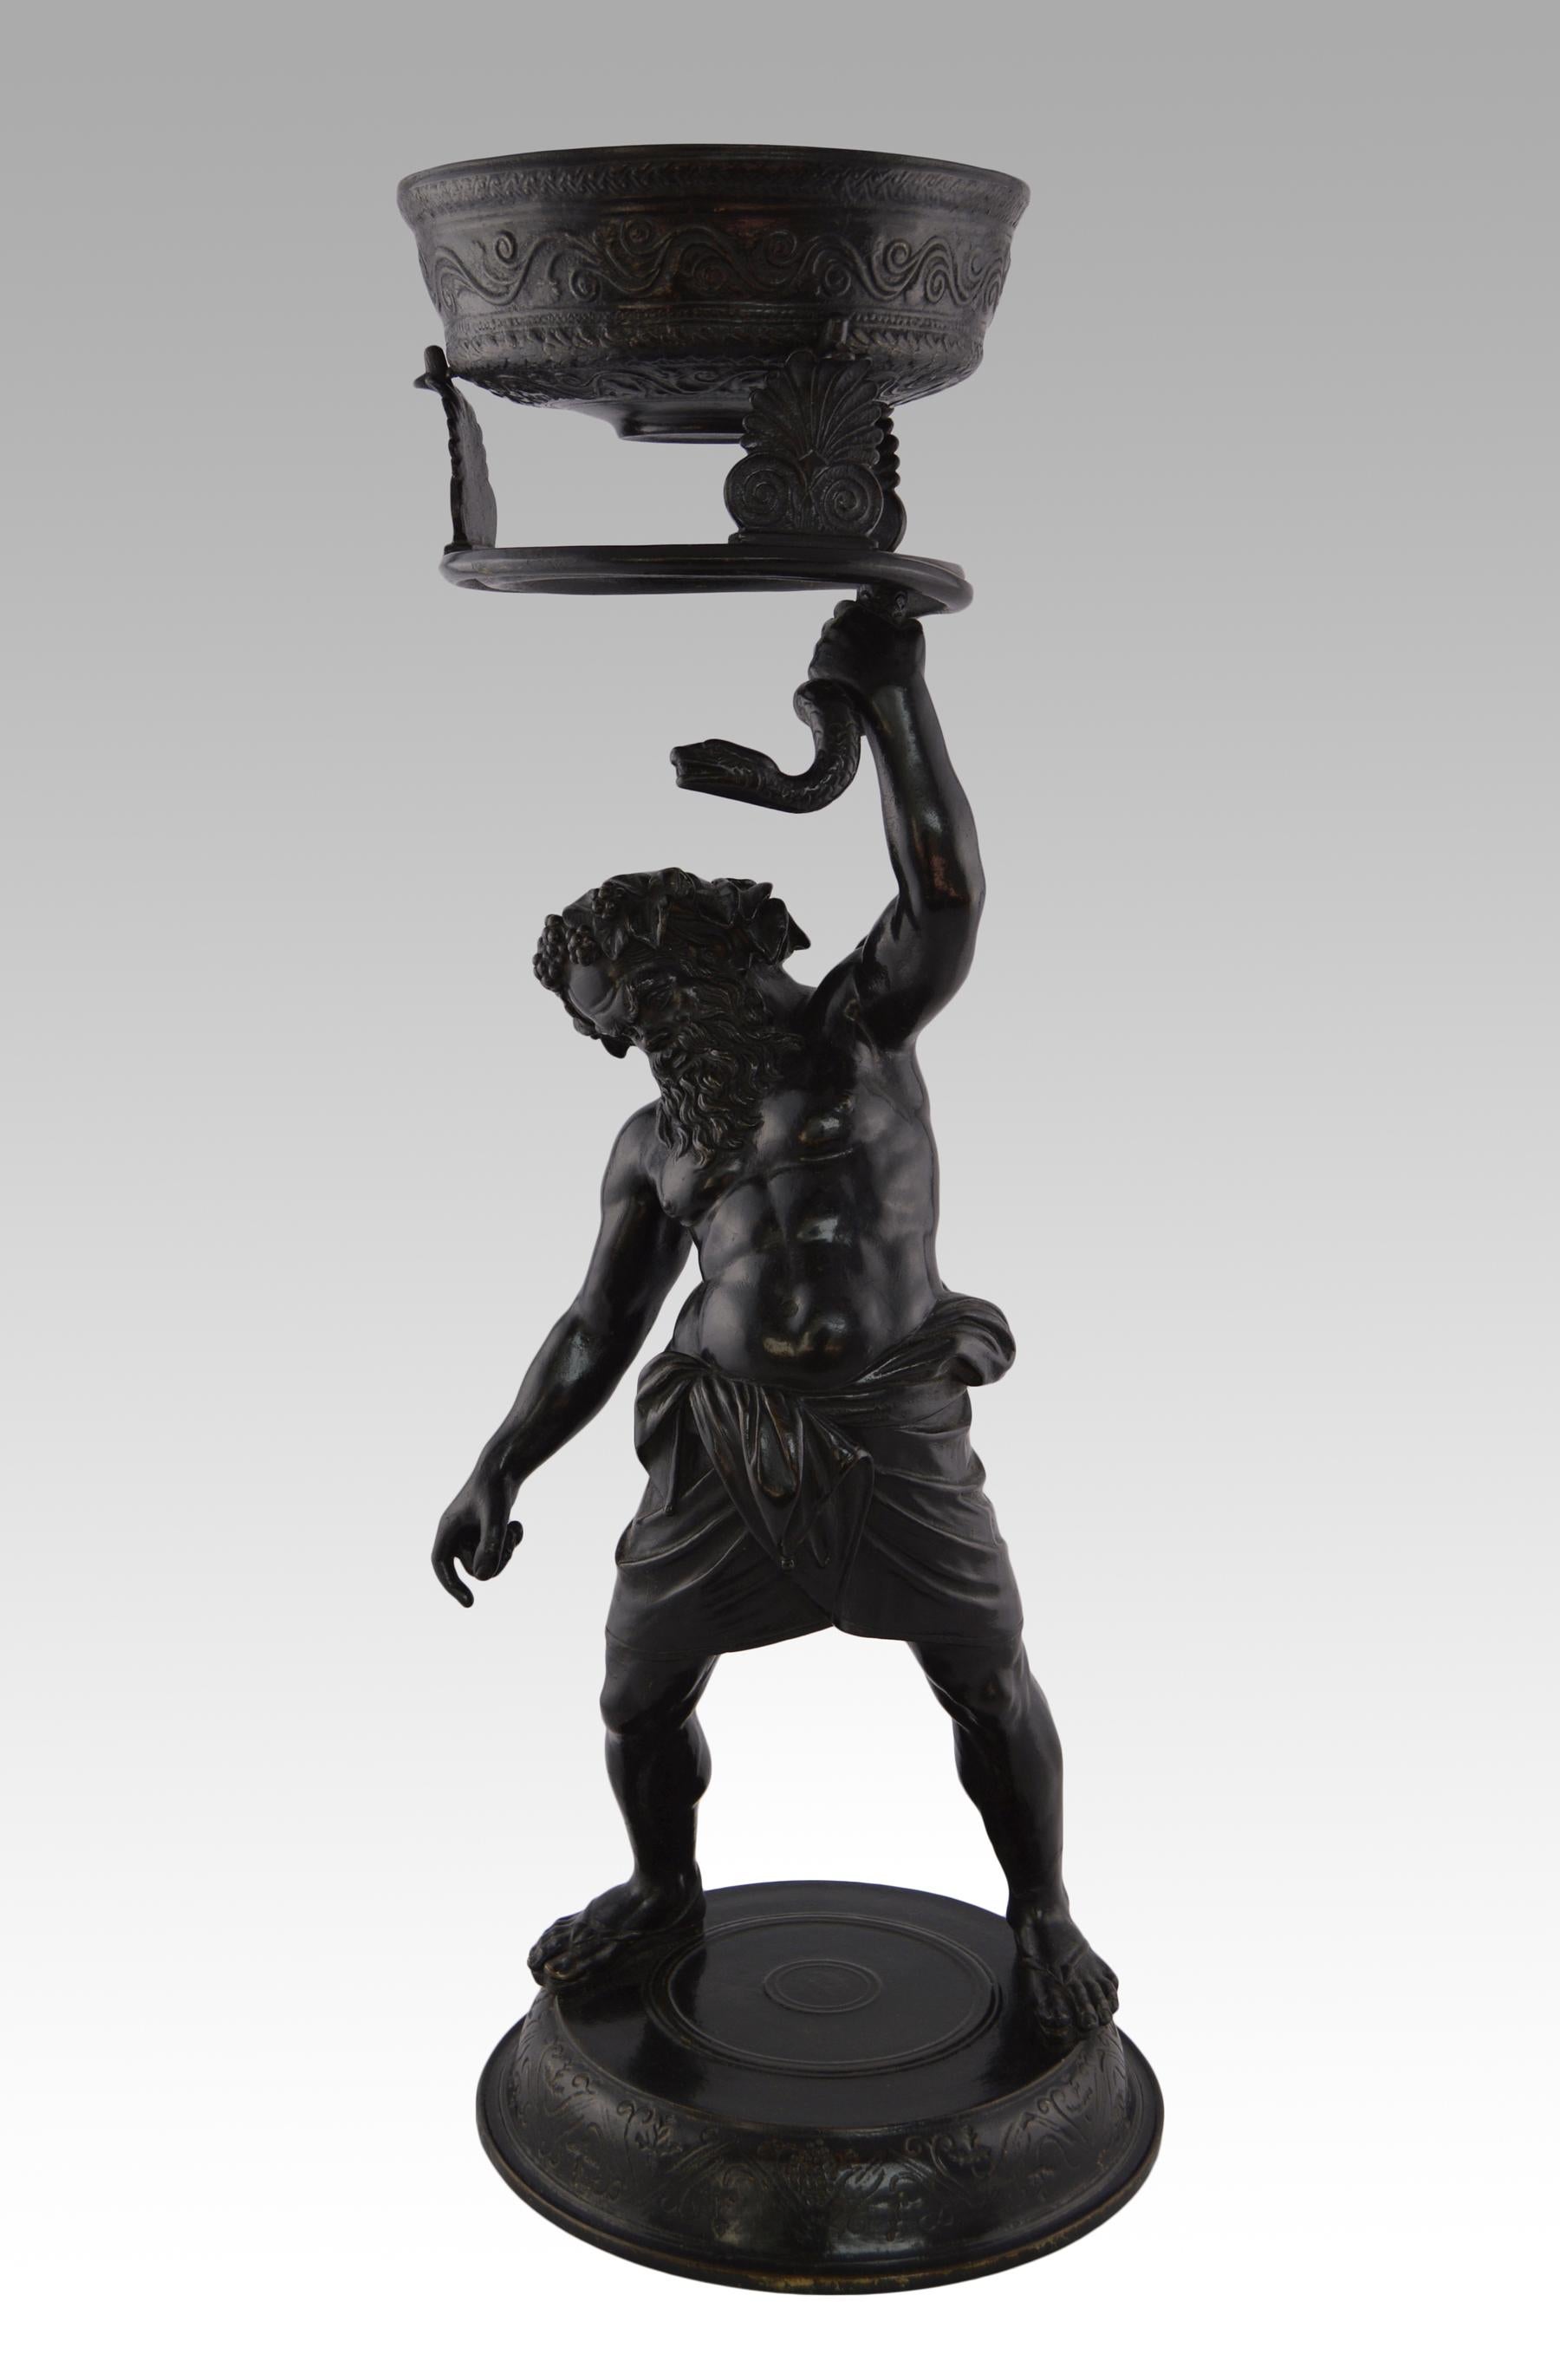 Figurative Sculpture Unknown - Sculpture italienne de Silenus en bronze du 19ème siècle, Grand Tour